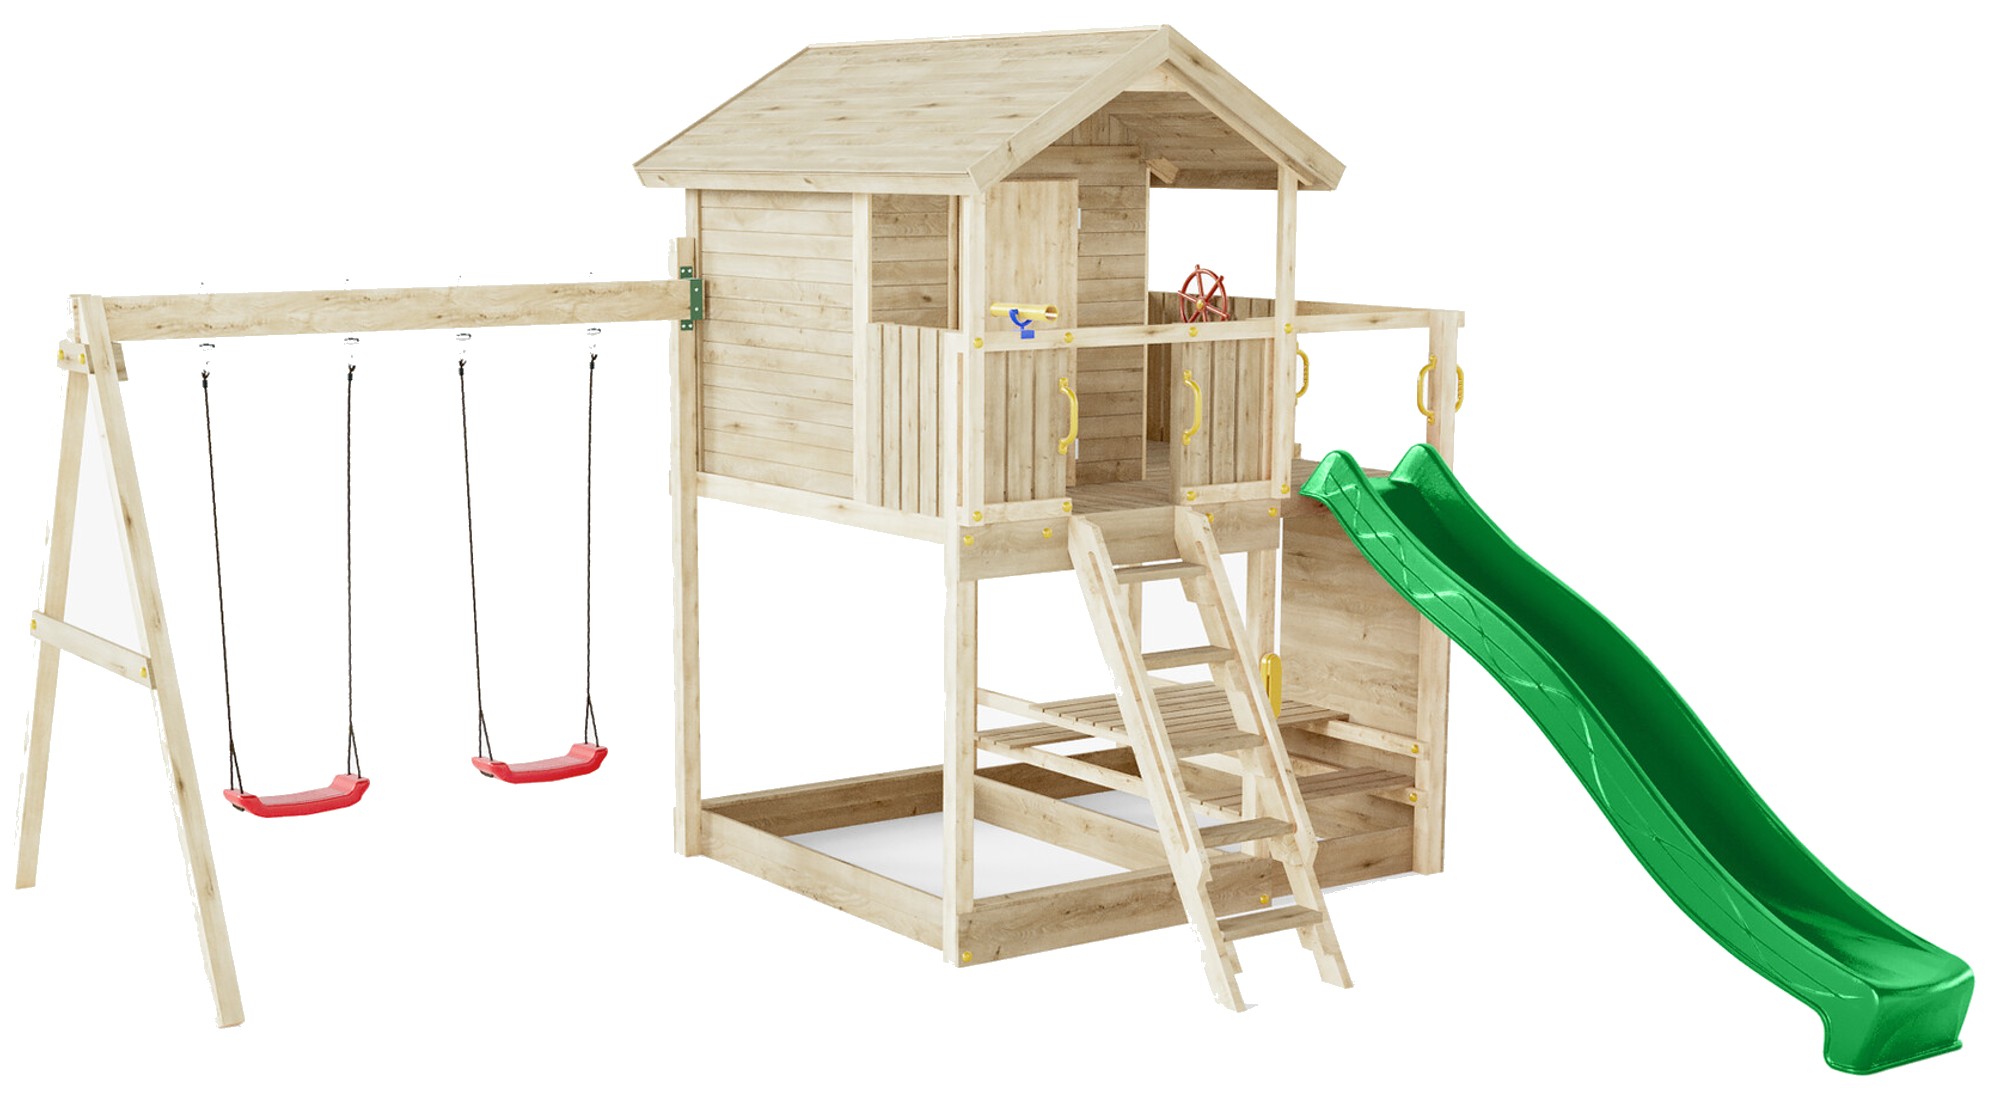 Plac zabaw drewniany ogrodowy Galaxy Moonlight KDI domek, 2x hutawka, zjedalnia, st piknikowy, cianka do wspinaczki, schodki, akcesoria